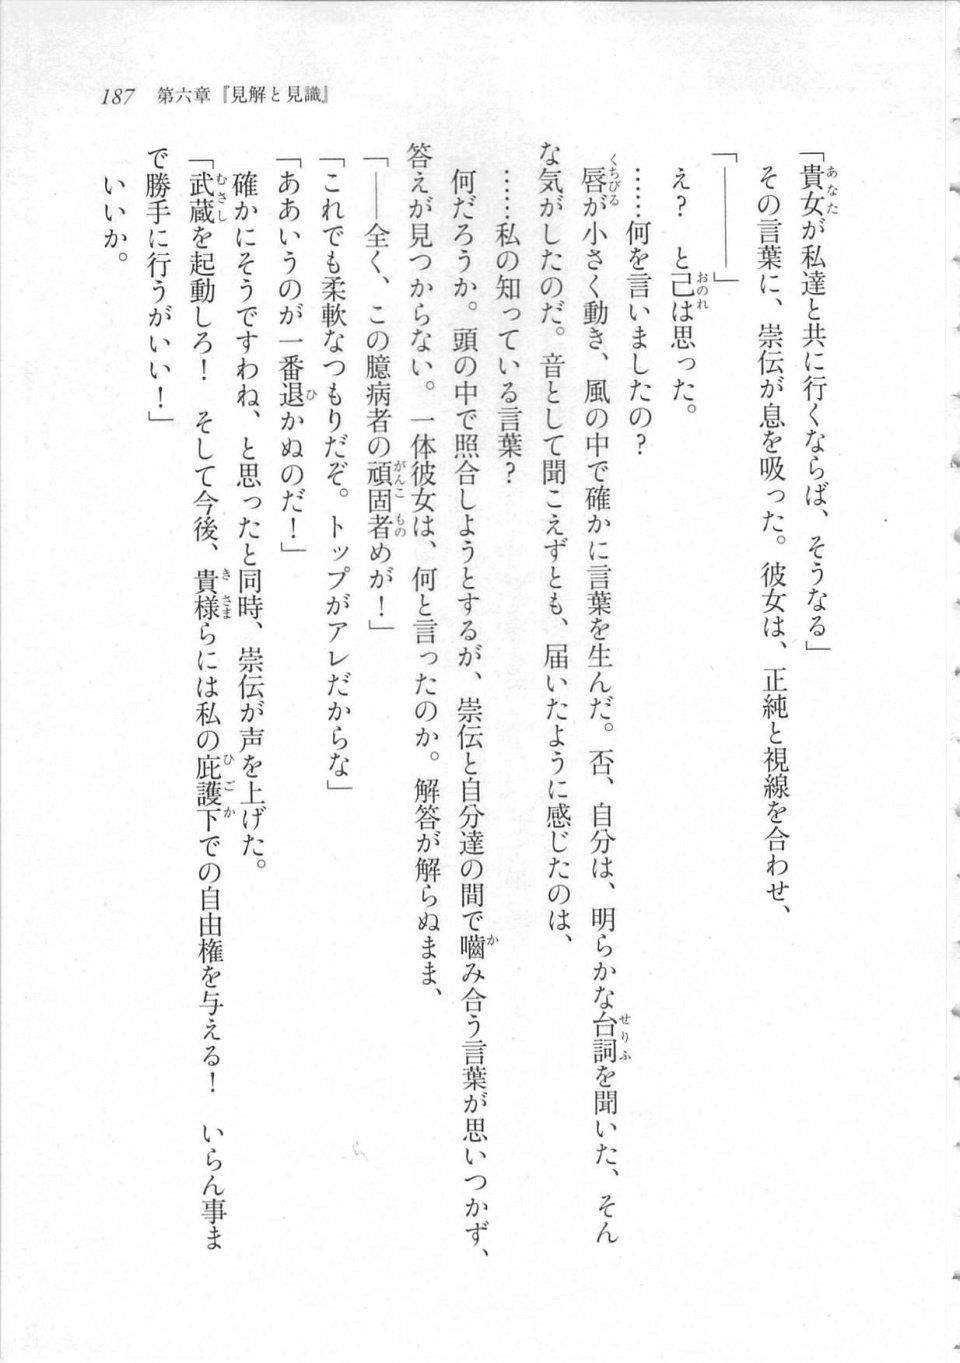 Kyoukai Senjou no Horizon LN Sidestory Vol 3 - Photo #191